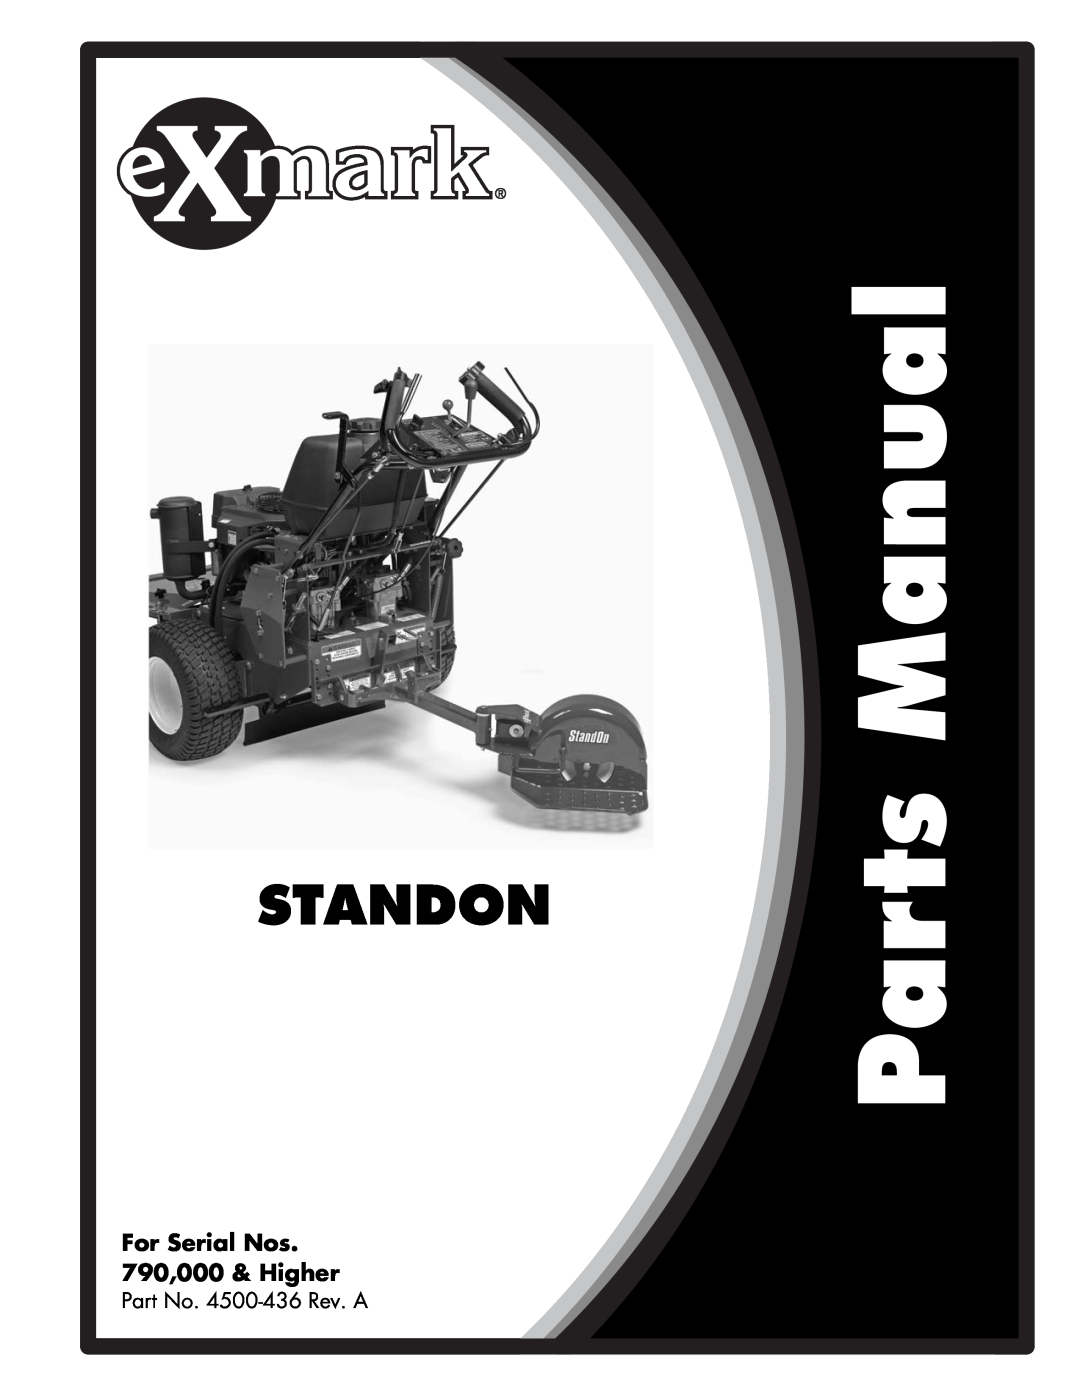 Exmark manual Standon, For Serial Nos 790,000 & Higher, Part No. 4500-436Rev. A 